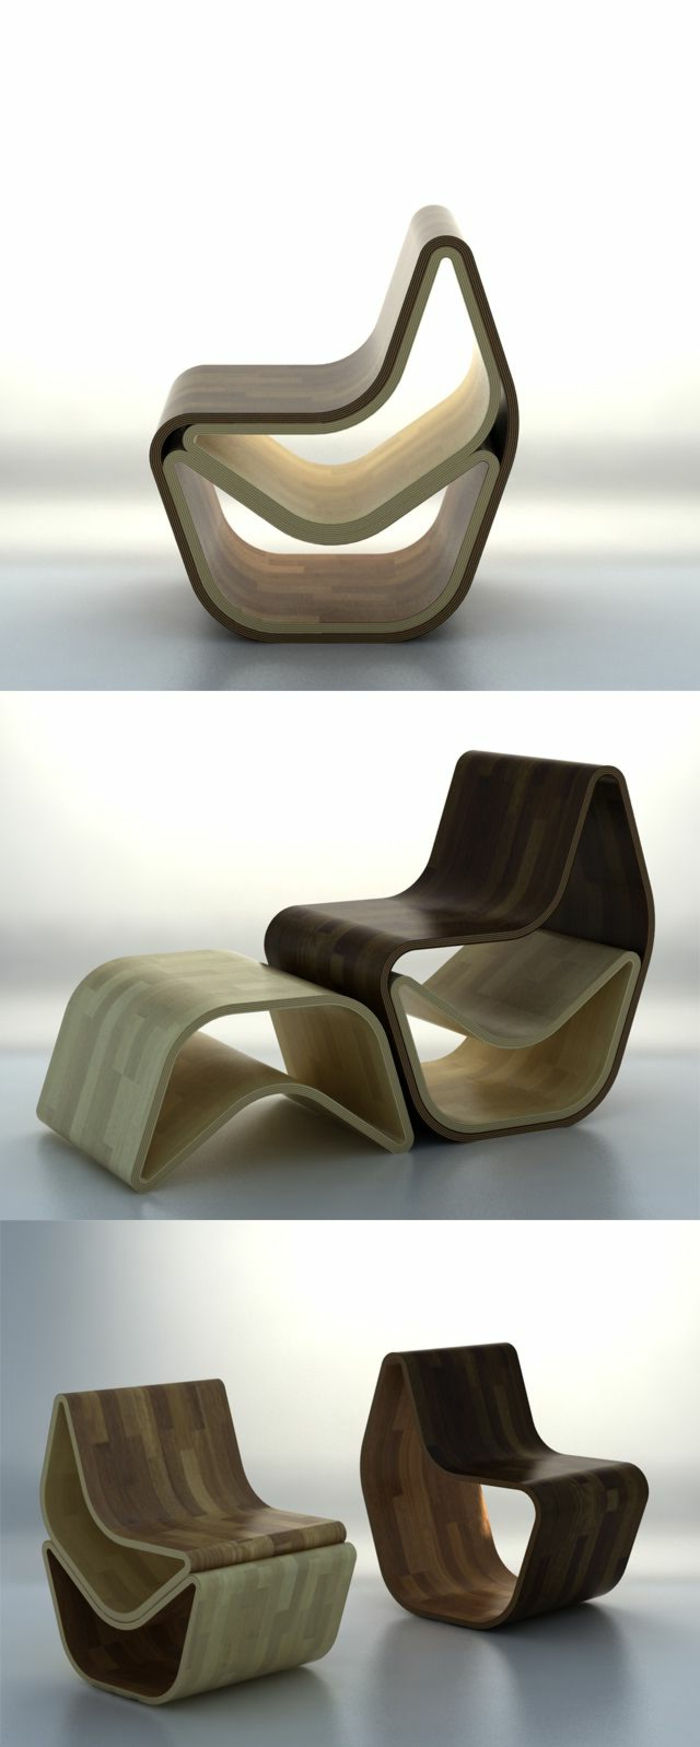 ruimtebesparende-meubels-modern-chair